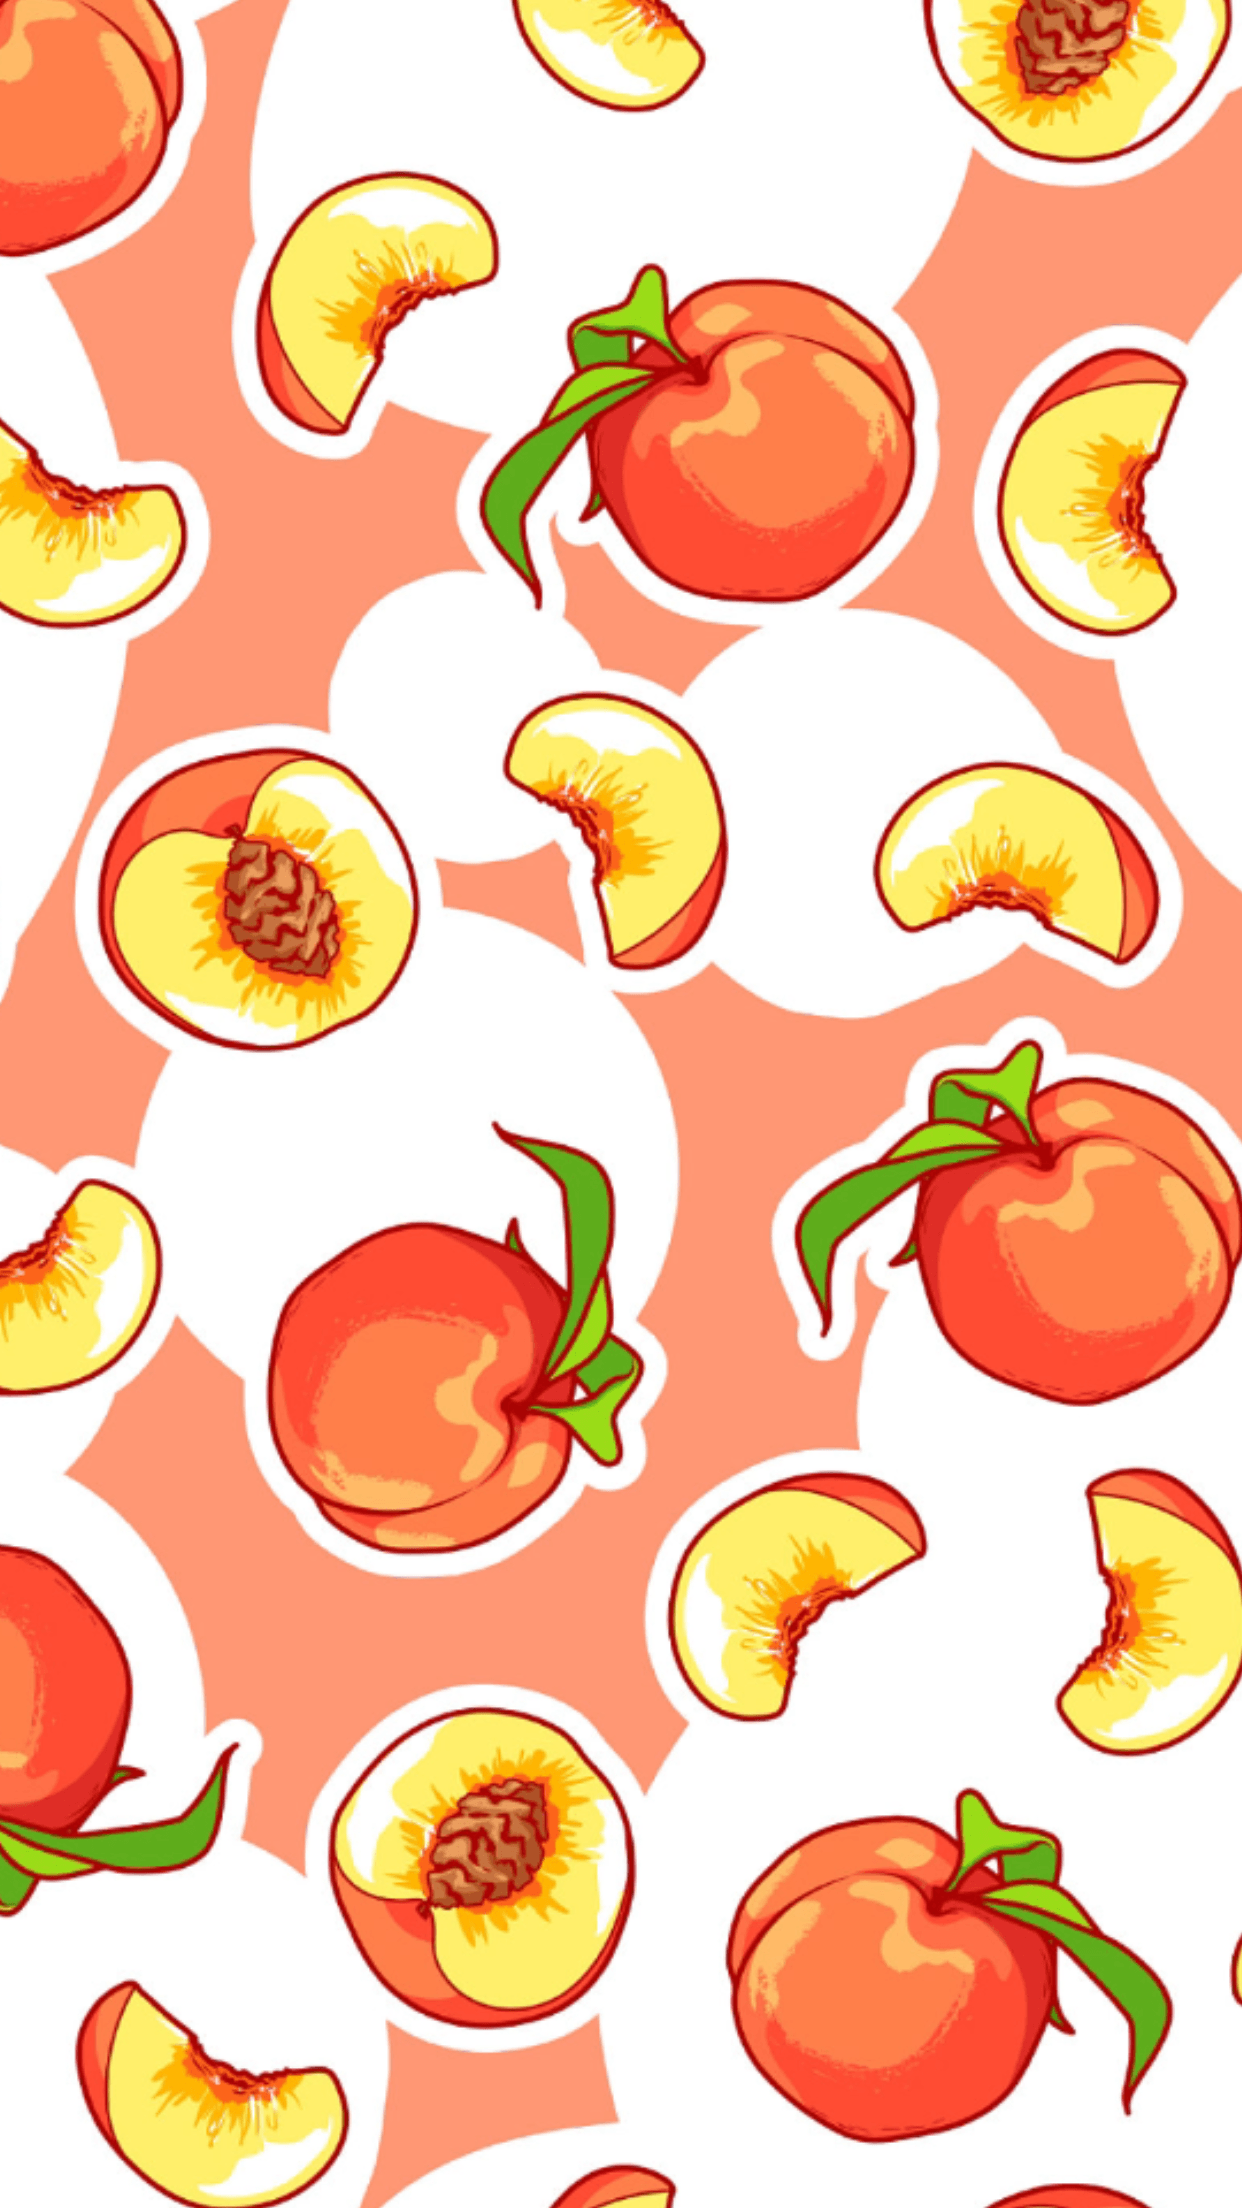 Peaches. Peach wallpaper, Peach aesthetic